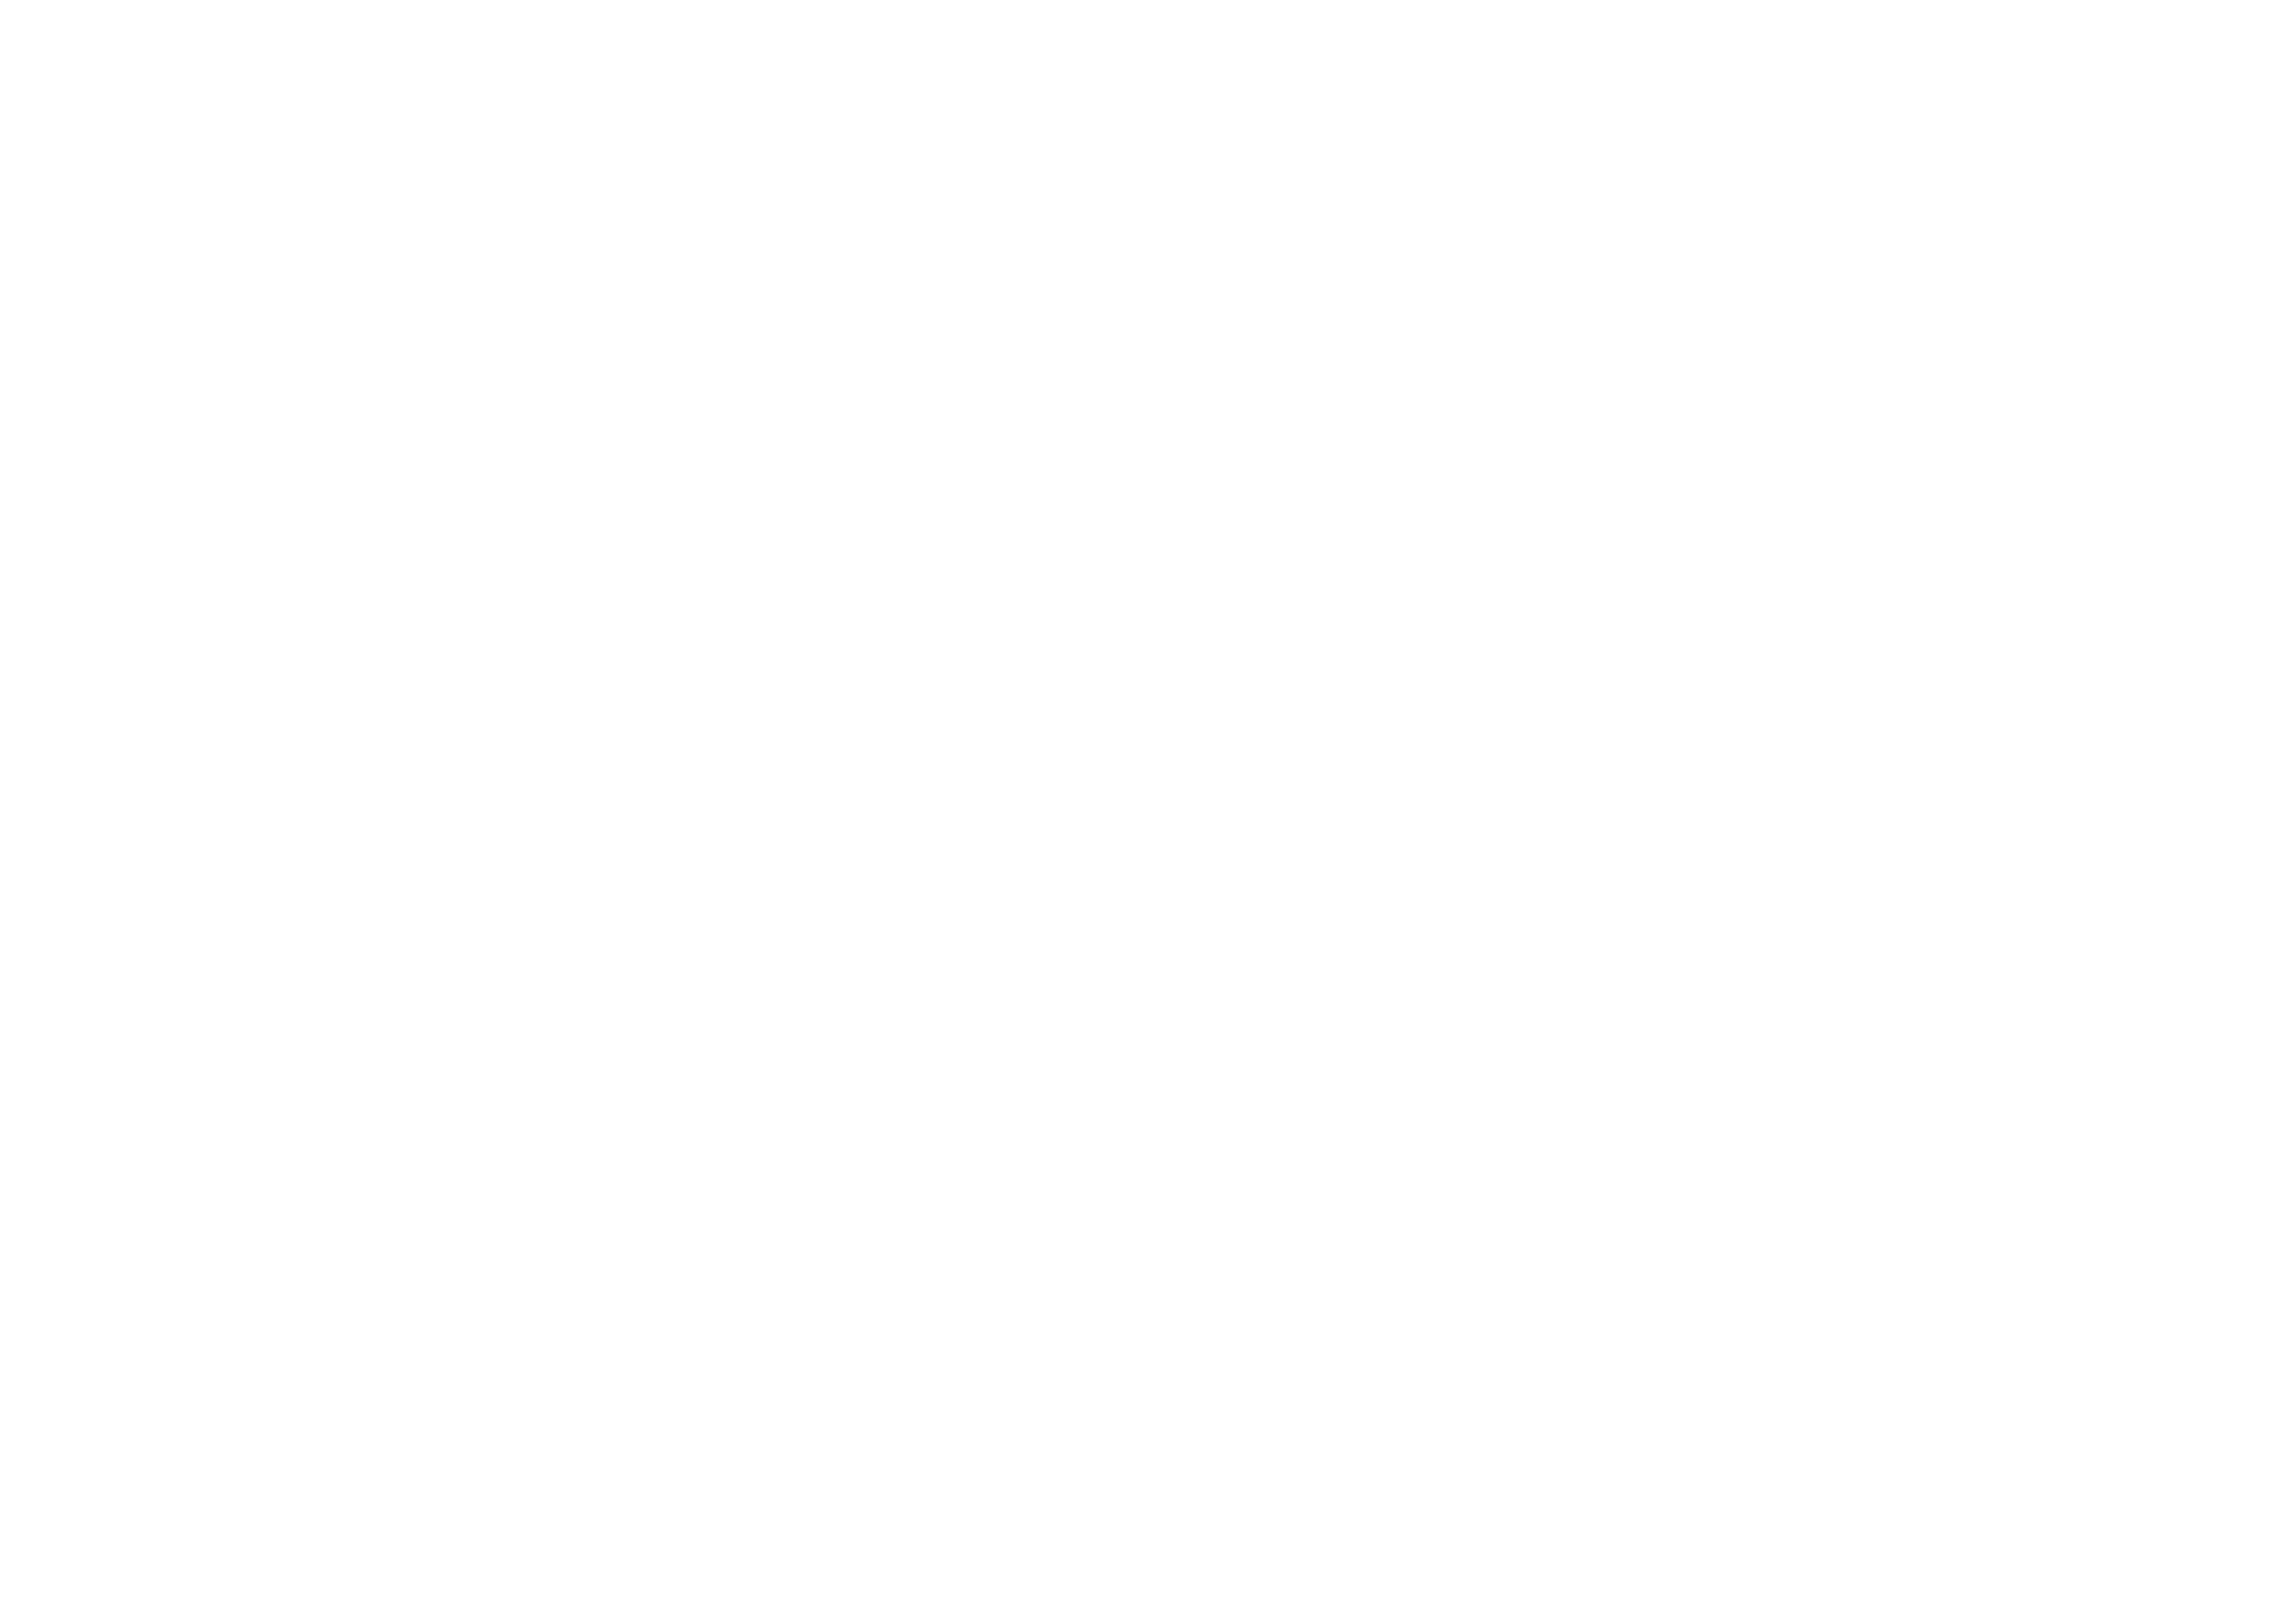 Aquaculture Direct